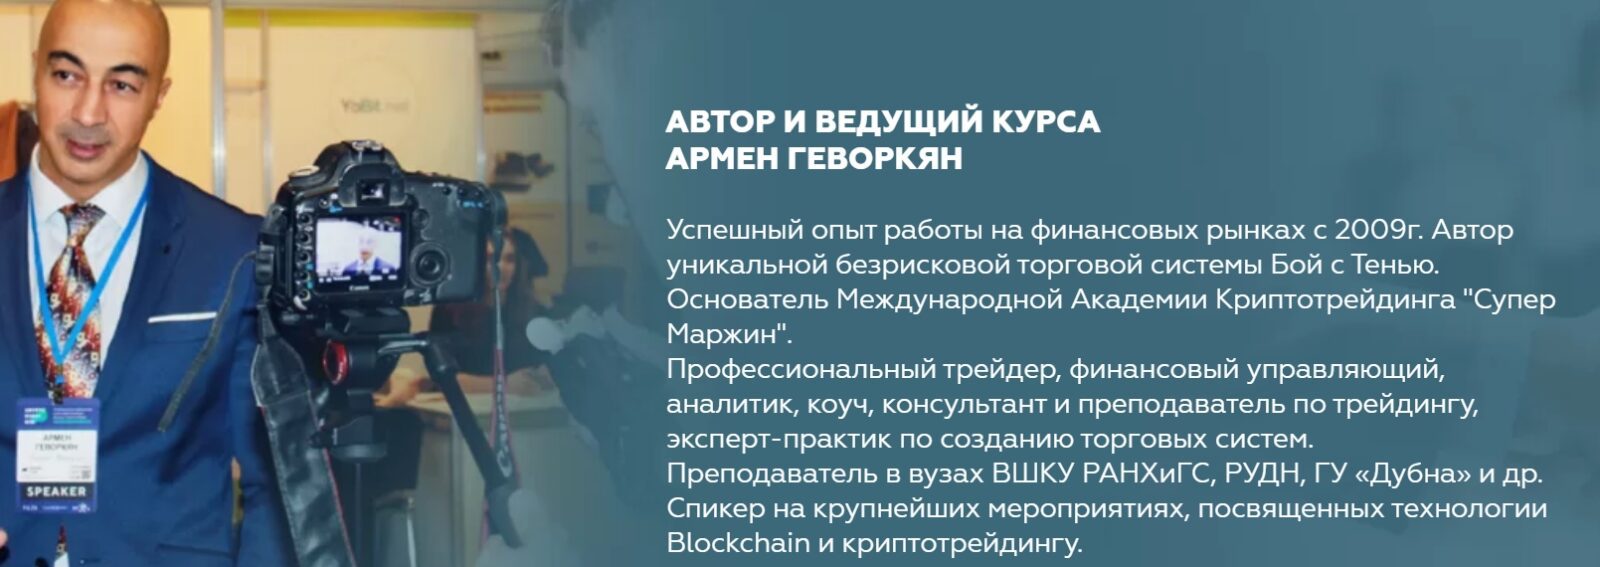 Сайт трейдера Армена Геворкяна